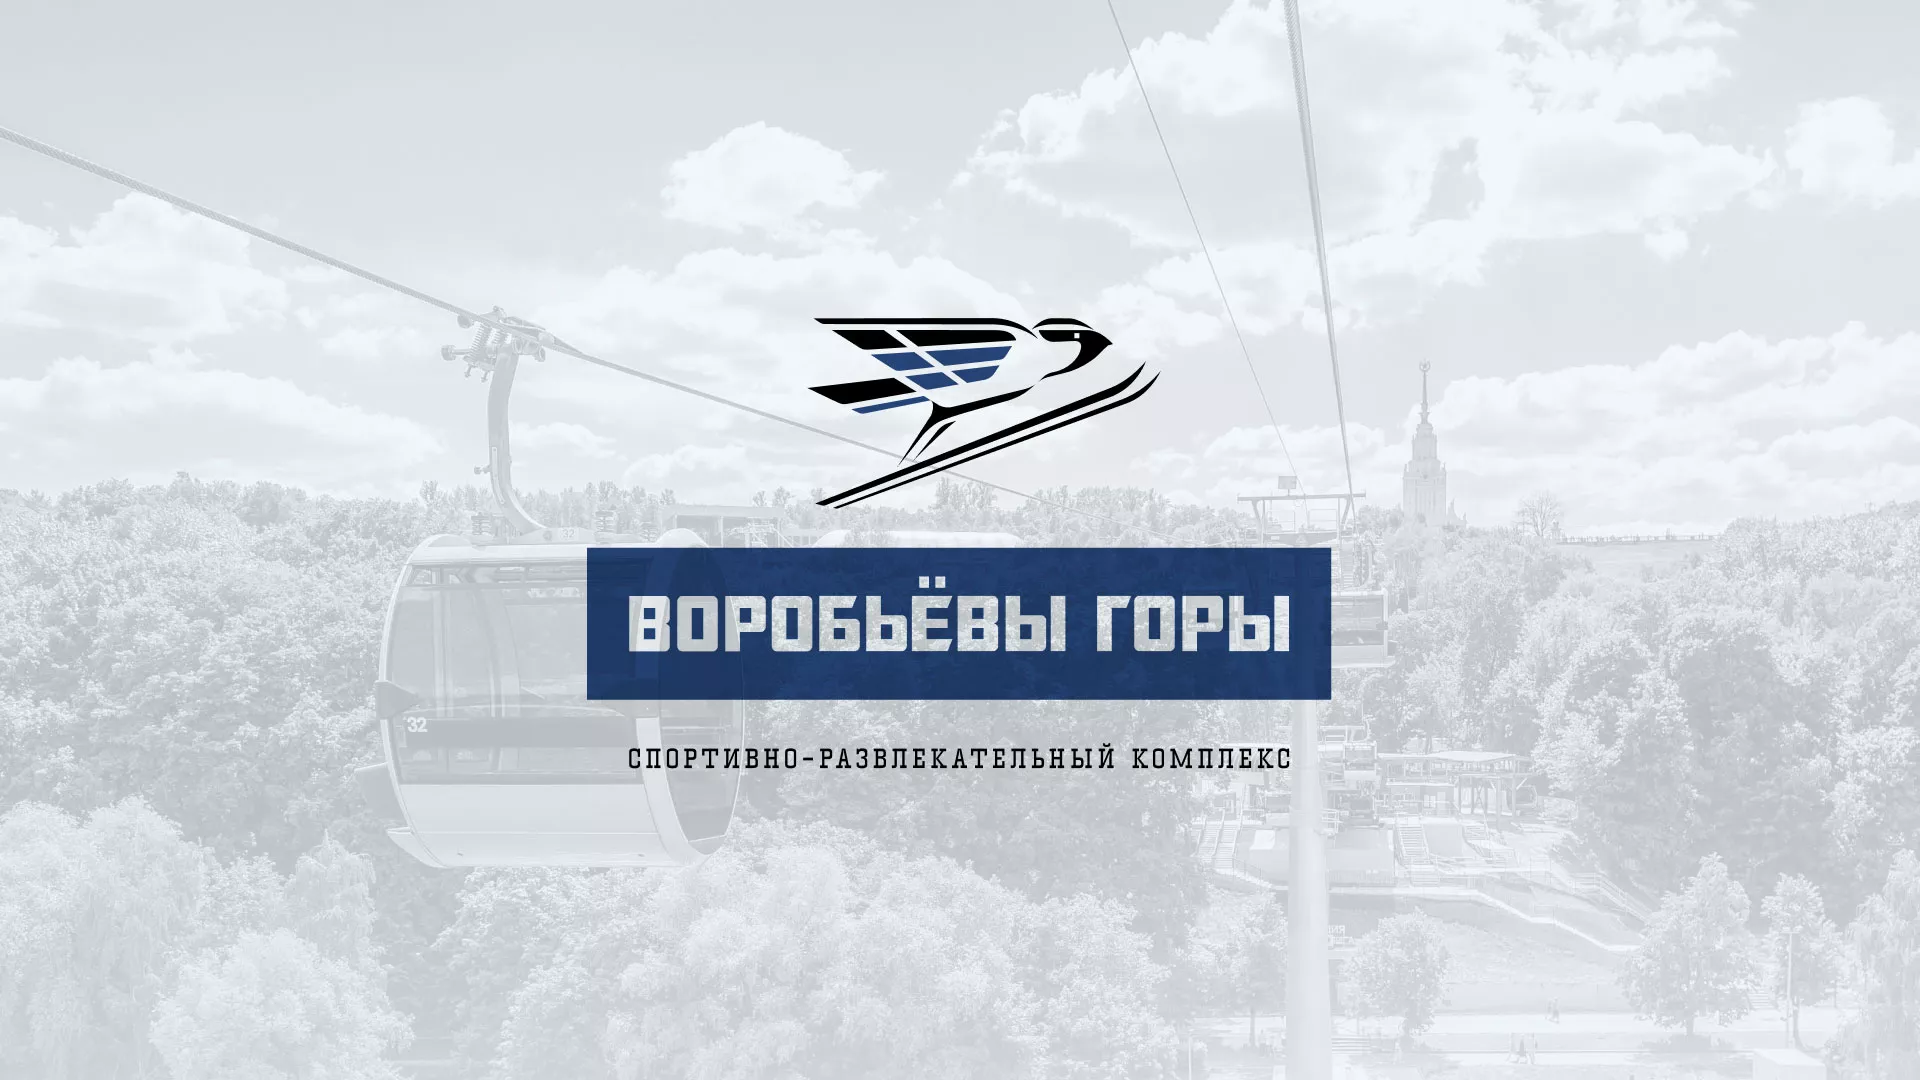 Разработка сайта в Сергиевом Посаде для спортивно-развлекательного комплекса «Воробьёвы горы»